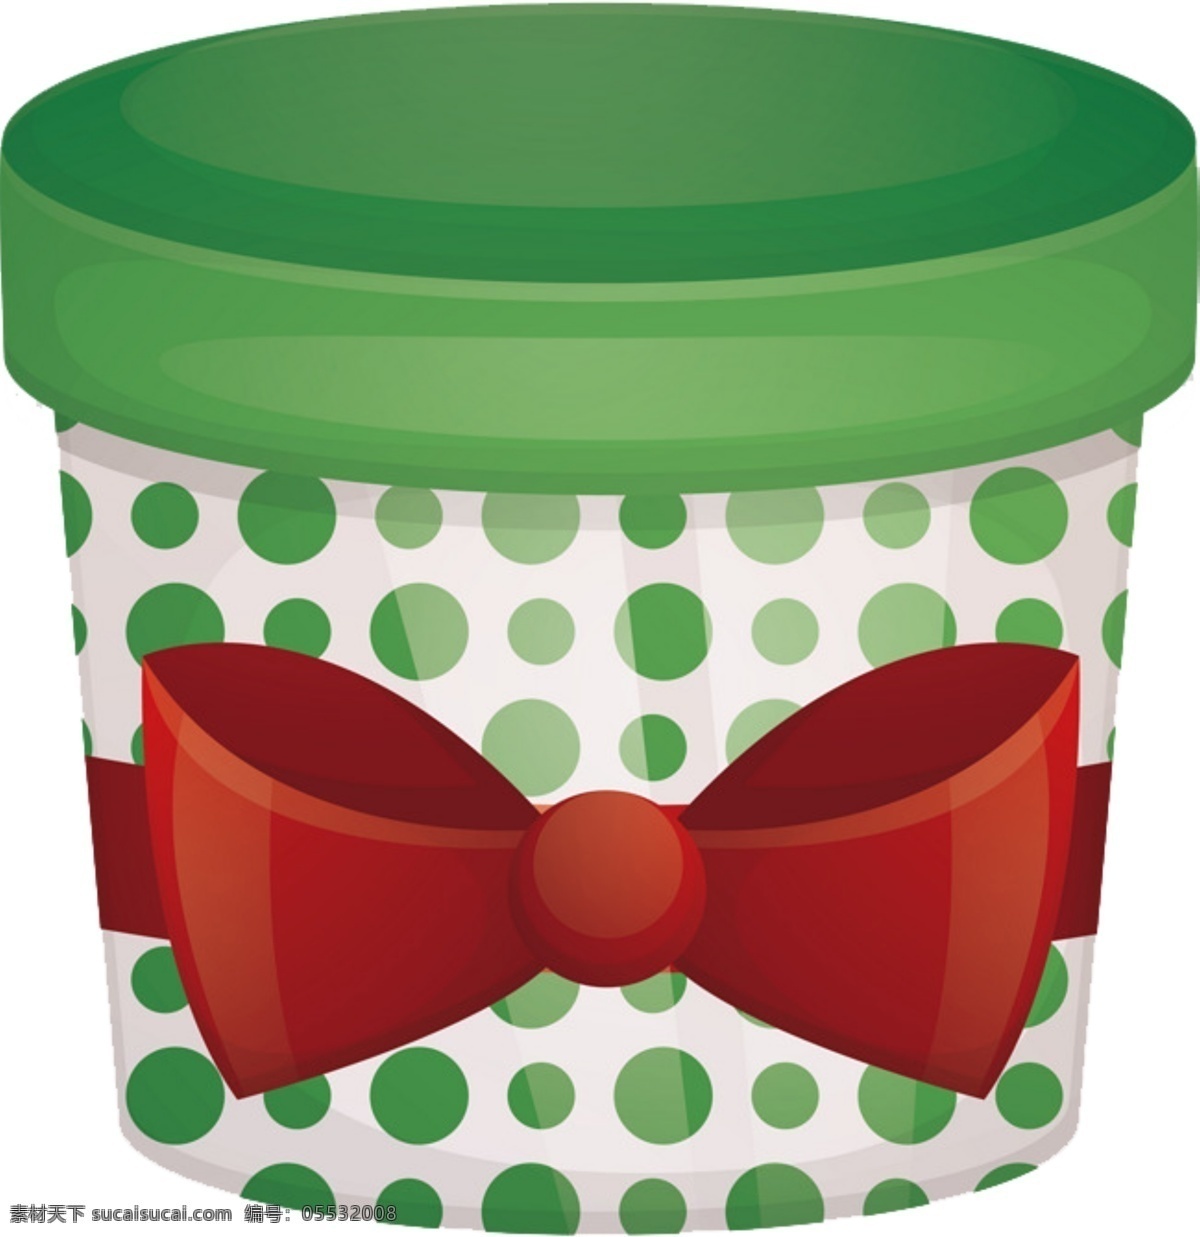 圣诞节 矢量 圣诞 礼盒 元素 装饰 图案 集合 圣诞礼盒 圣诞元素 圣诞素材 圣诞装饰 礼盒图案 矢量图 红色 绿色 扁平化 蝴蝶结